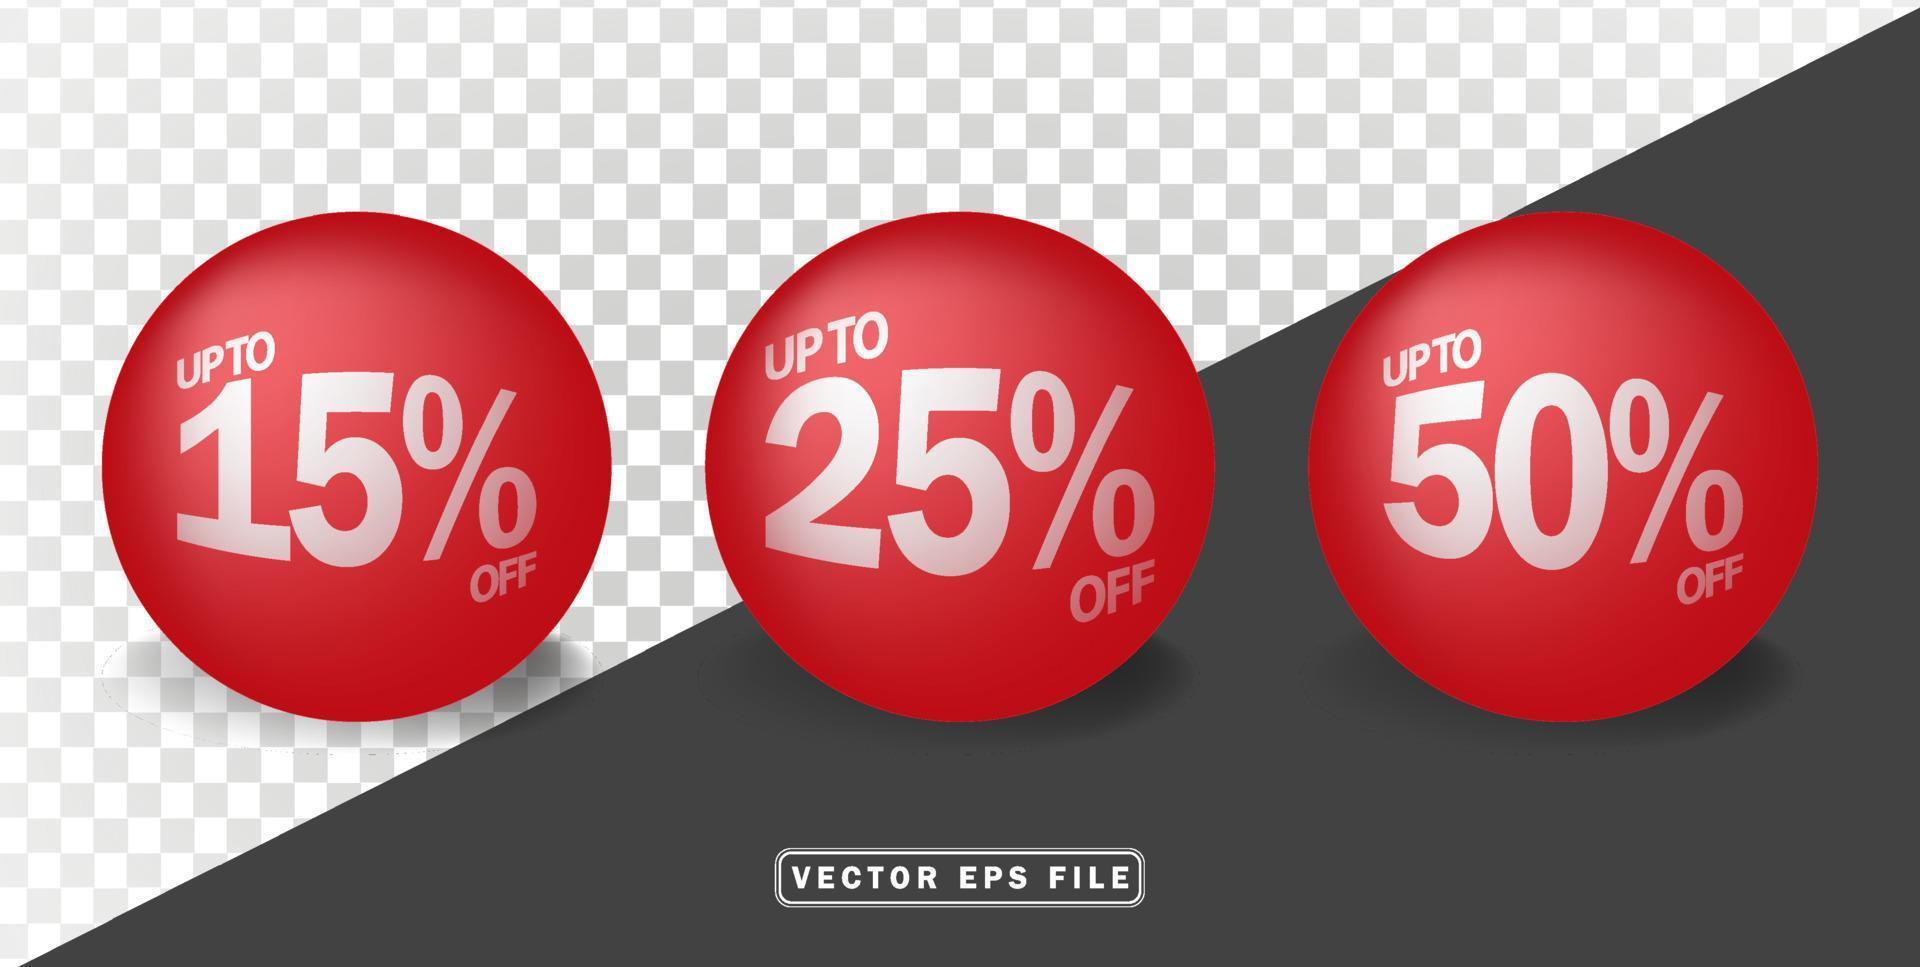 3d röd boll med rabatt procent försäljning vektor